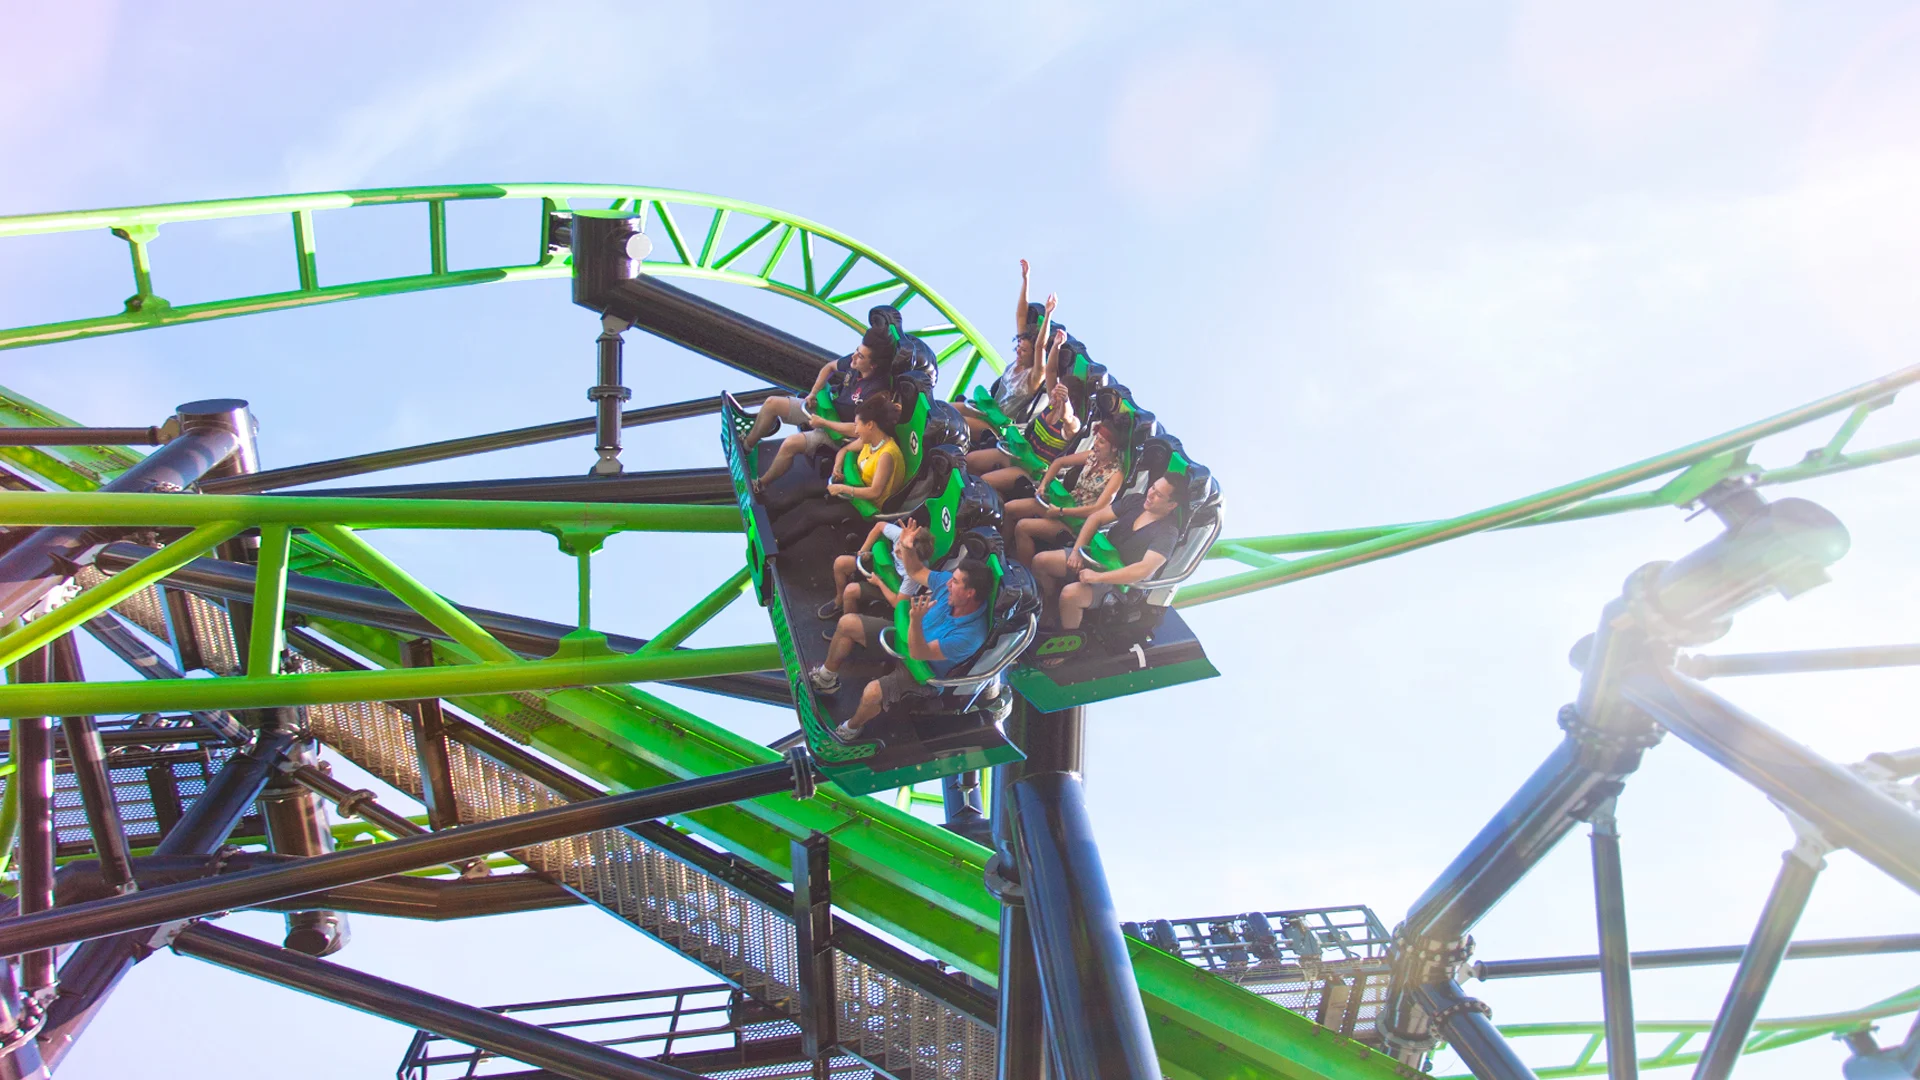 Thrilled riders twisting around a corner on the Green Lantern Coaster at Warner Bros. Movie World